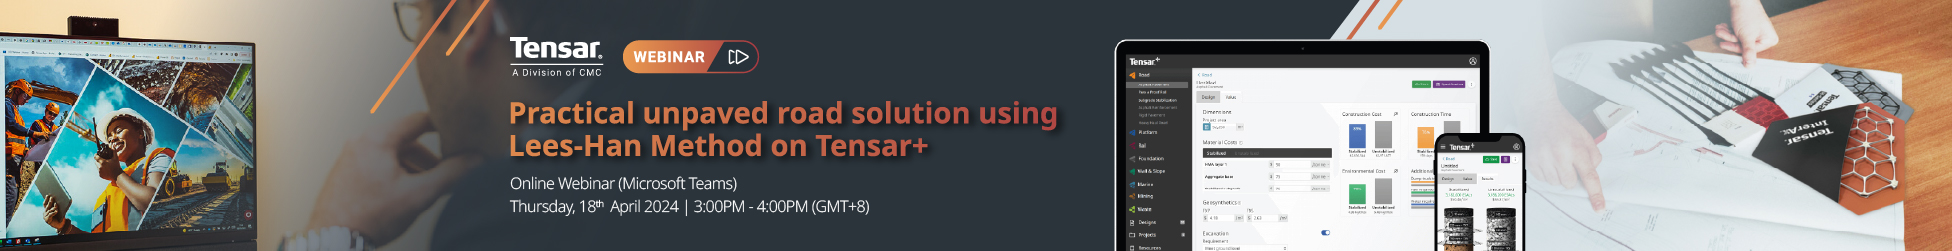 Image of Webinar on "Practical unpaved road solution using Lees-Han Method on Tensar+"